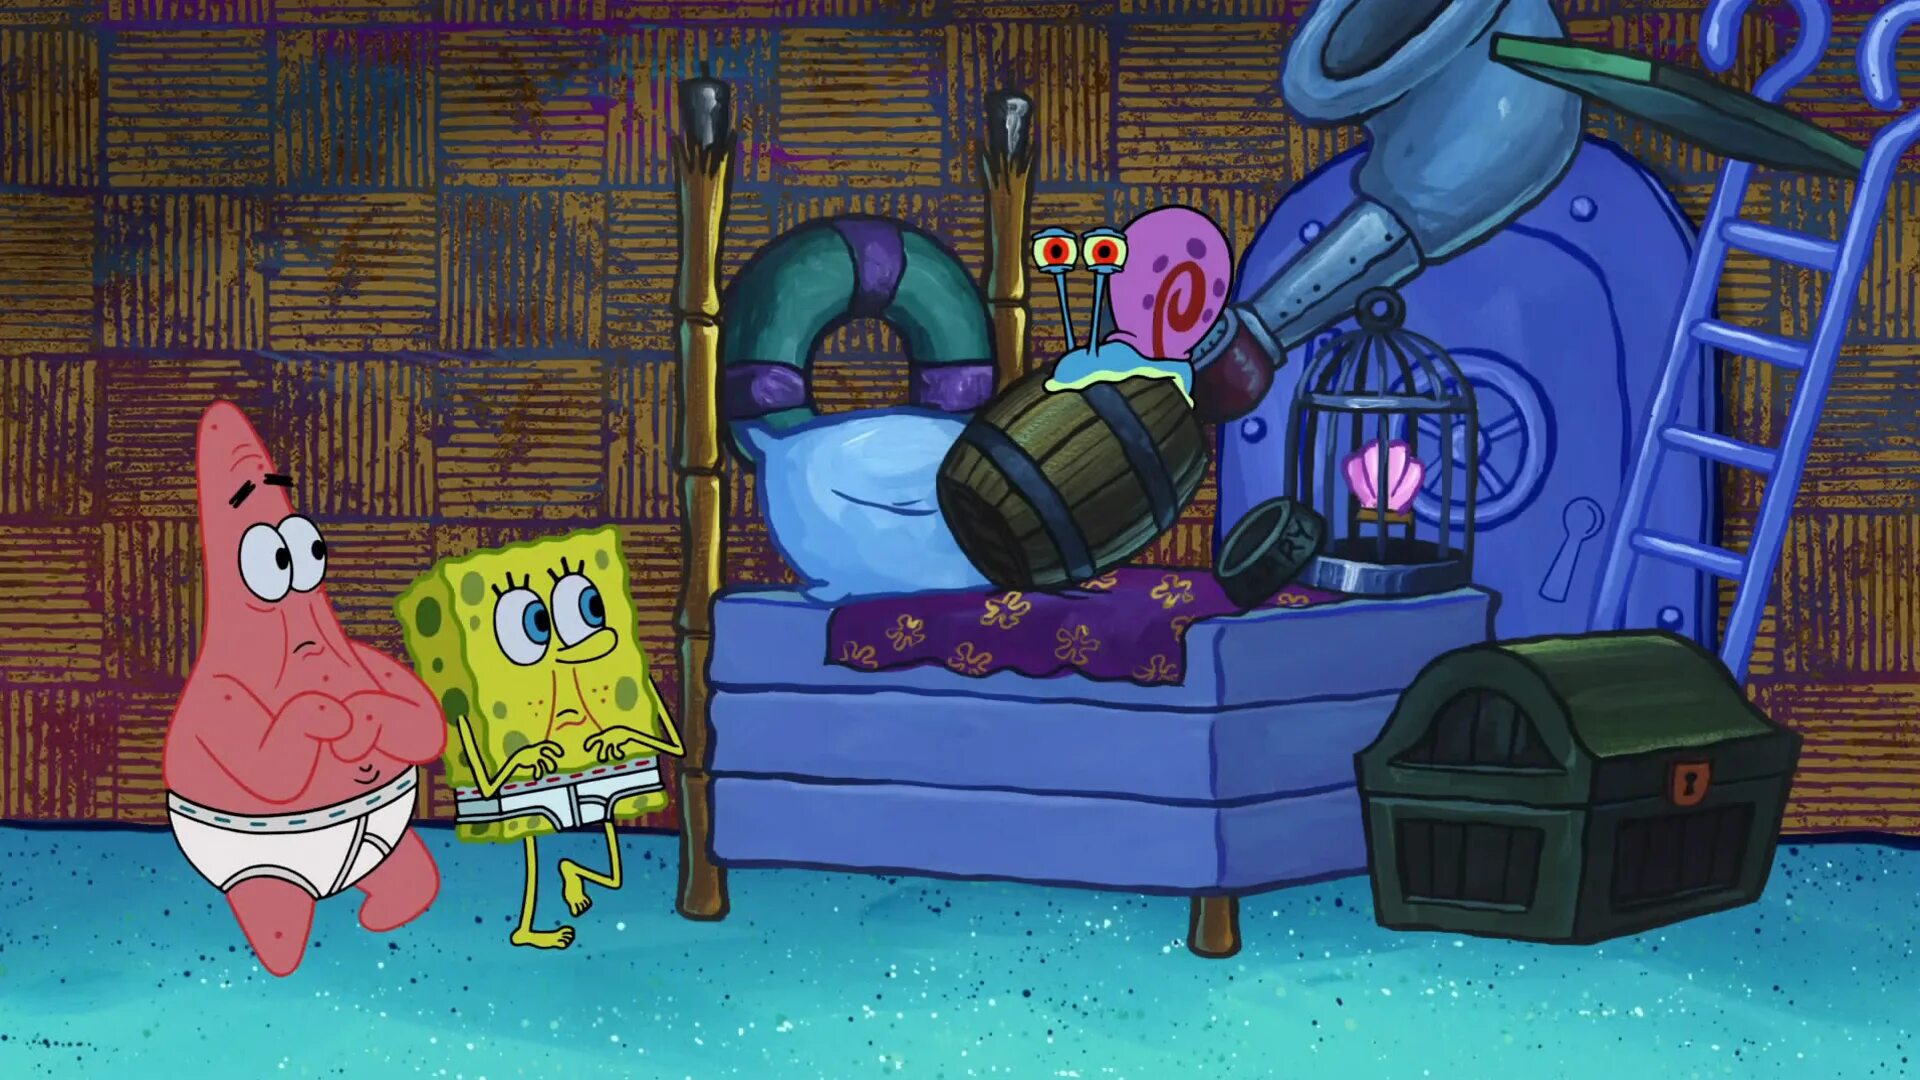 Губка боб 11 штаны. Патрик квадратные штаны Гэри. Spongebob квадратные штаны Seasons. Дом губки Боба Сквидварда и Патрика.